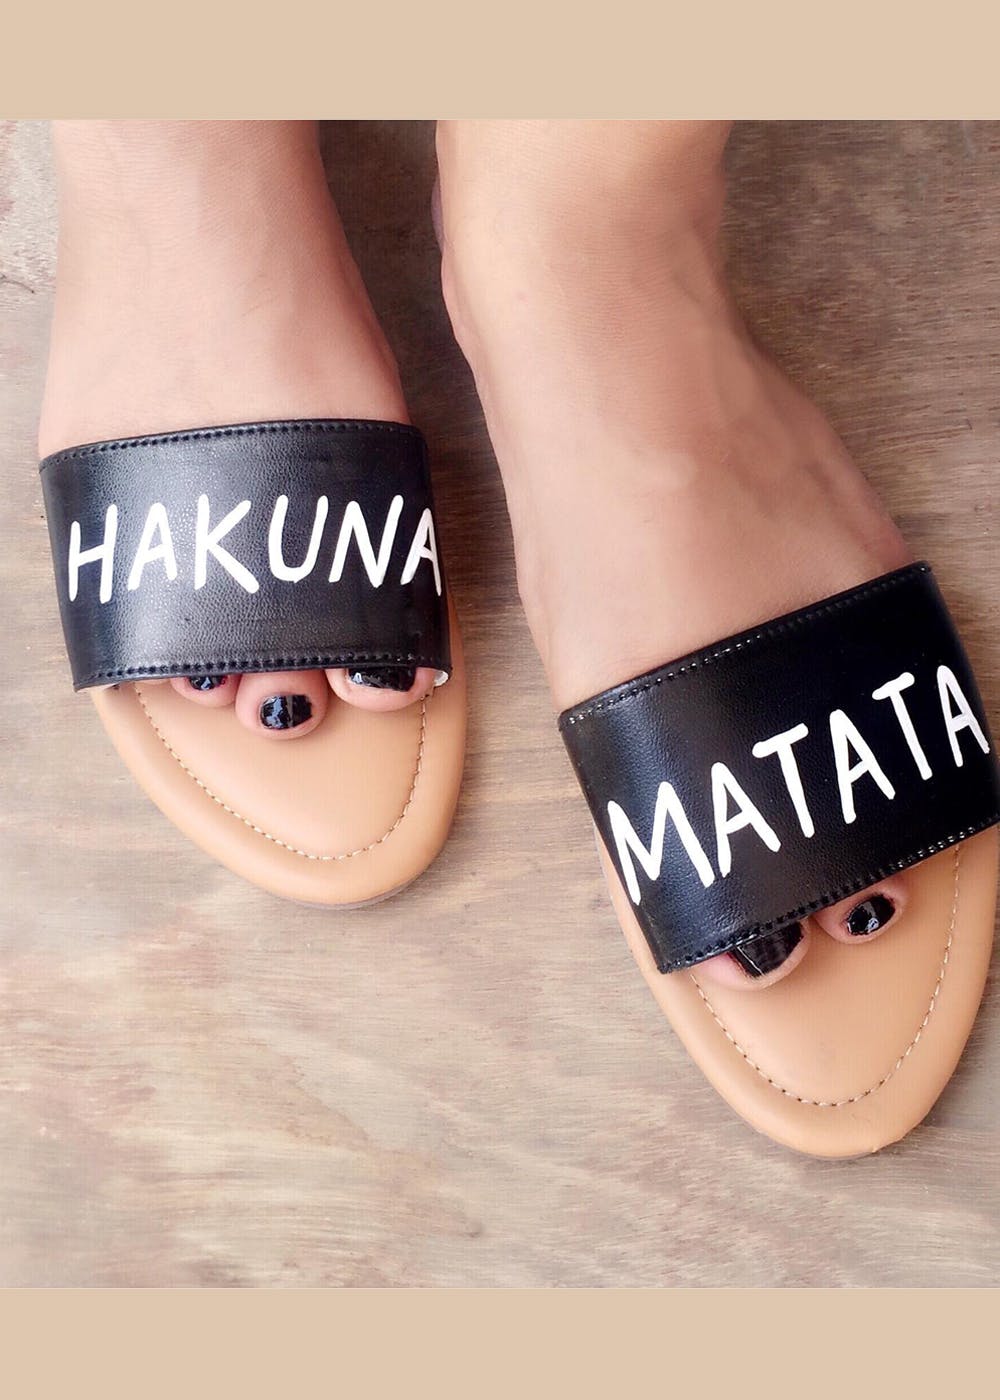 Get 'Hakuna Matata' Black Slides at ₹ 999 | LBB Shop